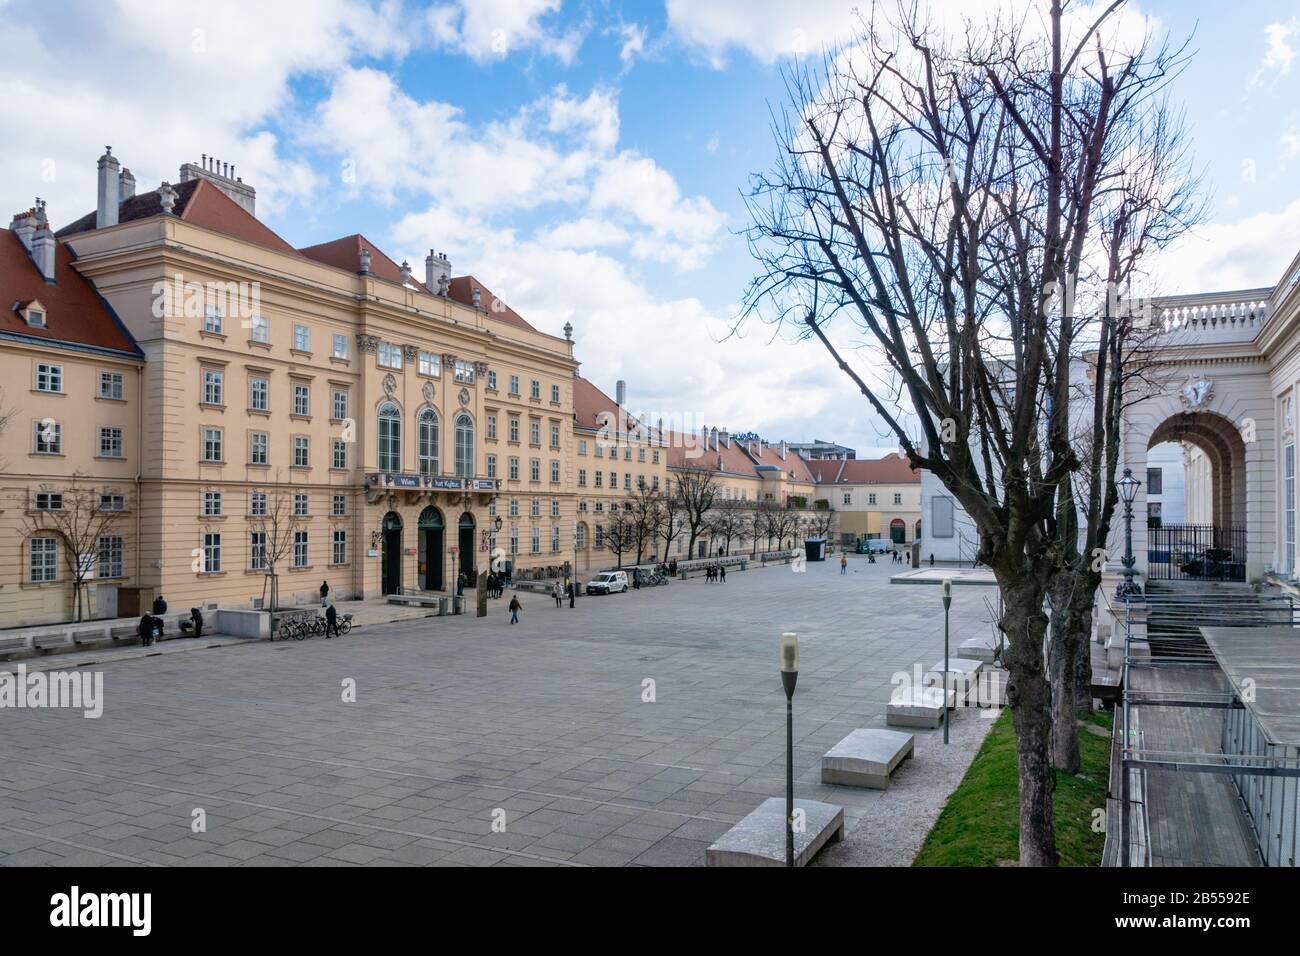 Vienne, Autriche - Mars 2020: Architecture Museumsquartier ou MQ dans le centre-ville de Vienne. Banque D'Images